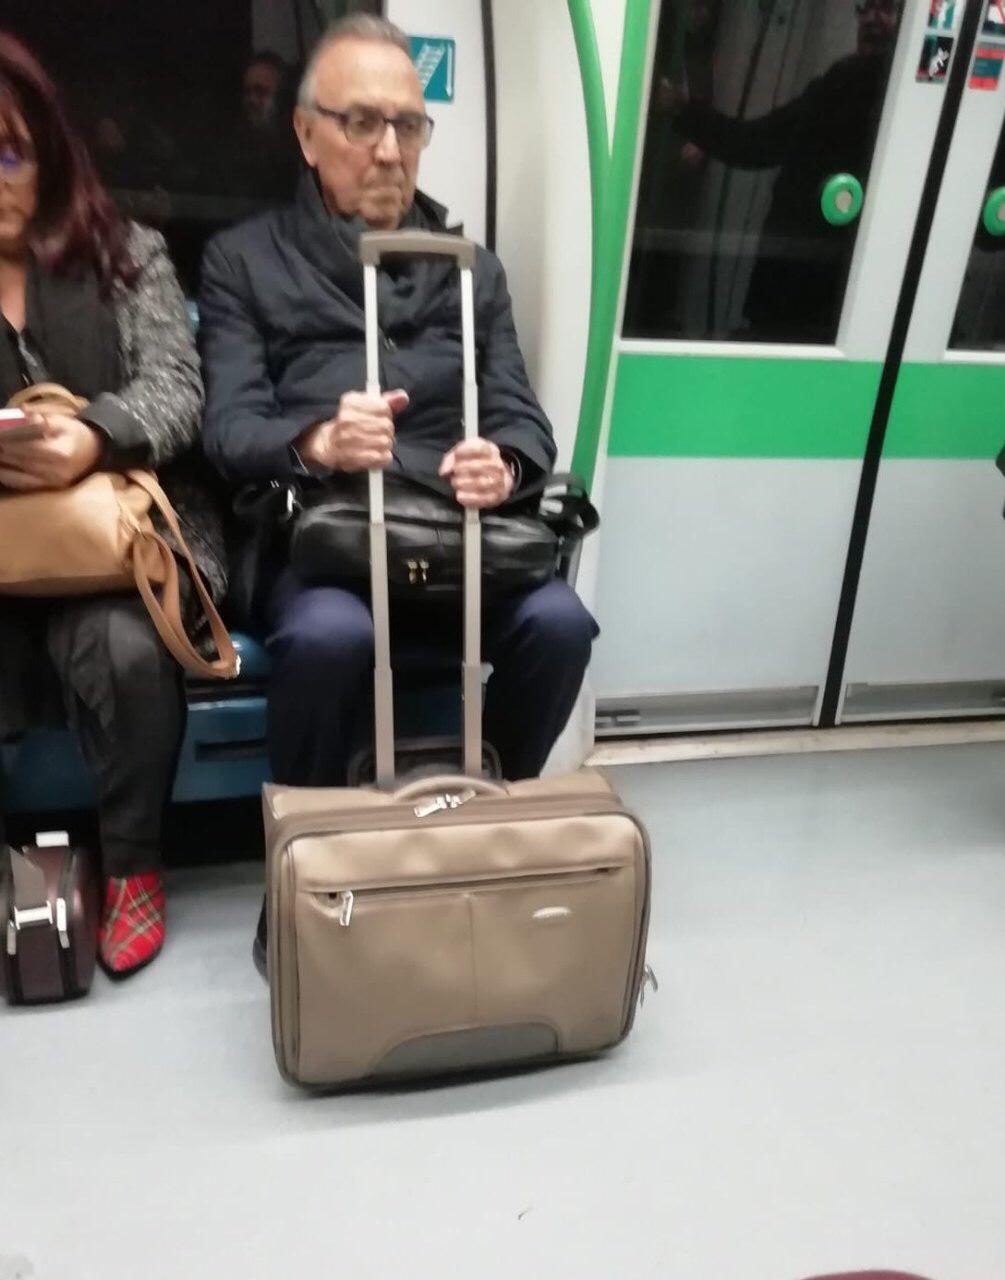 Gaspart sobrevive a su primer viaje en metro